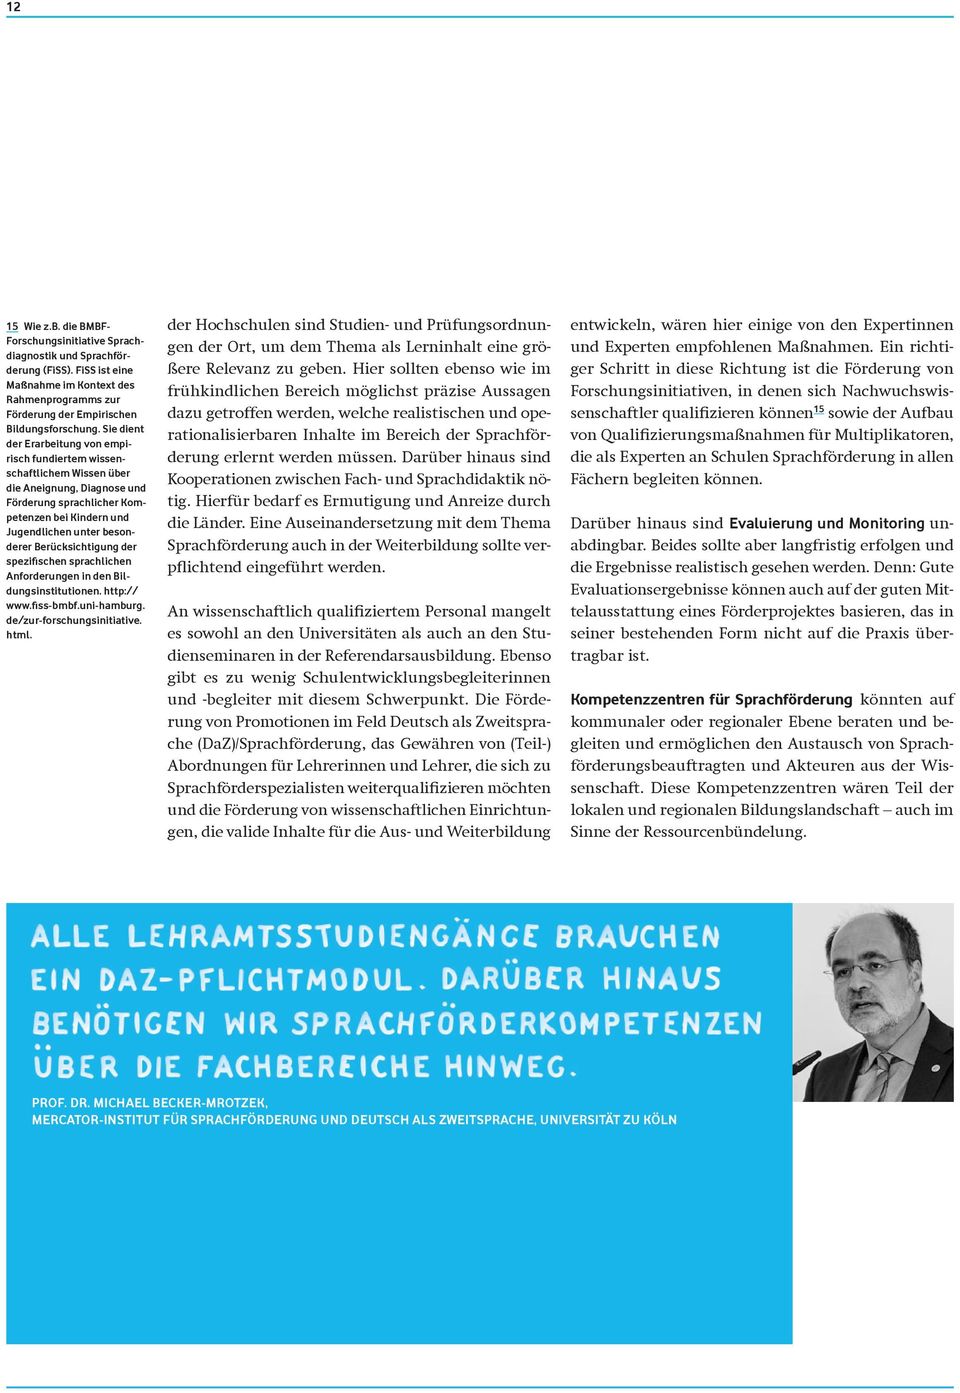 Berücksichtigung der spezifischen sprachlichen Anforderungen in den Bildungsinstitutionen. http:// www.fiss-bmbf.uni-hamburg. de/zur-forschungsinitiative. html.